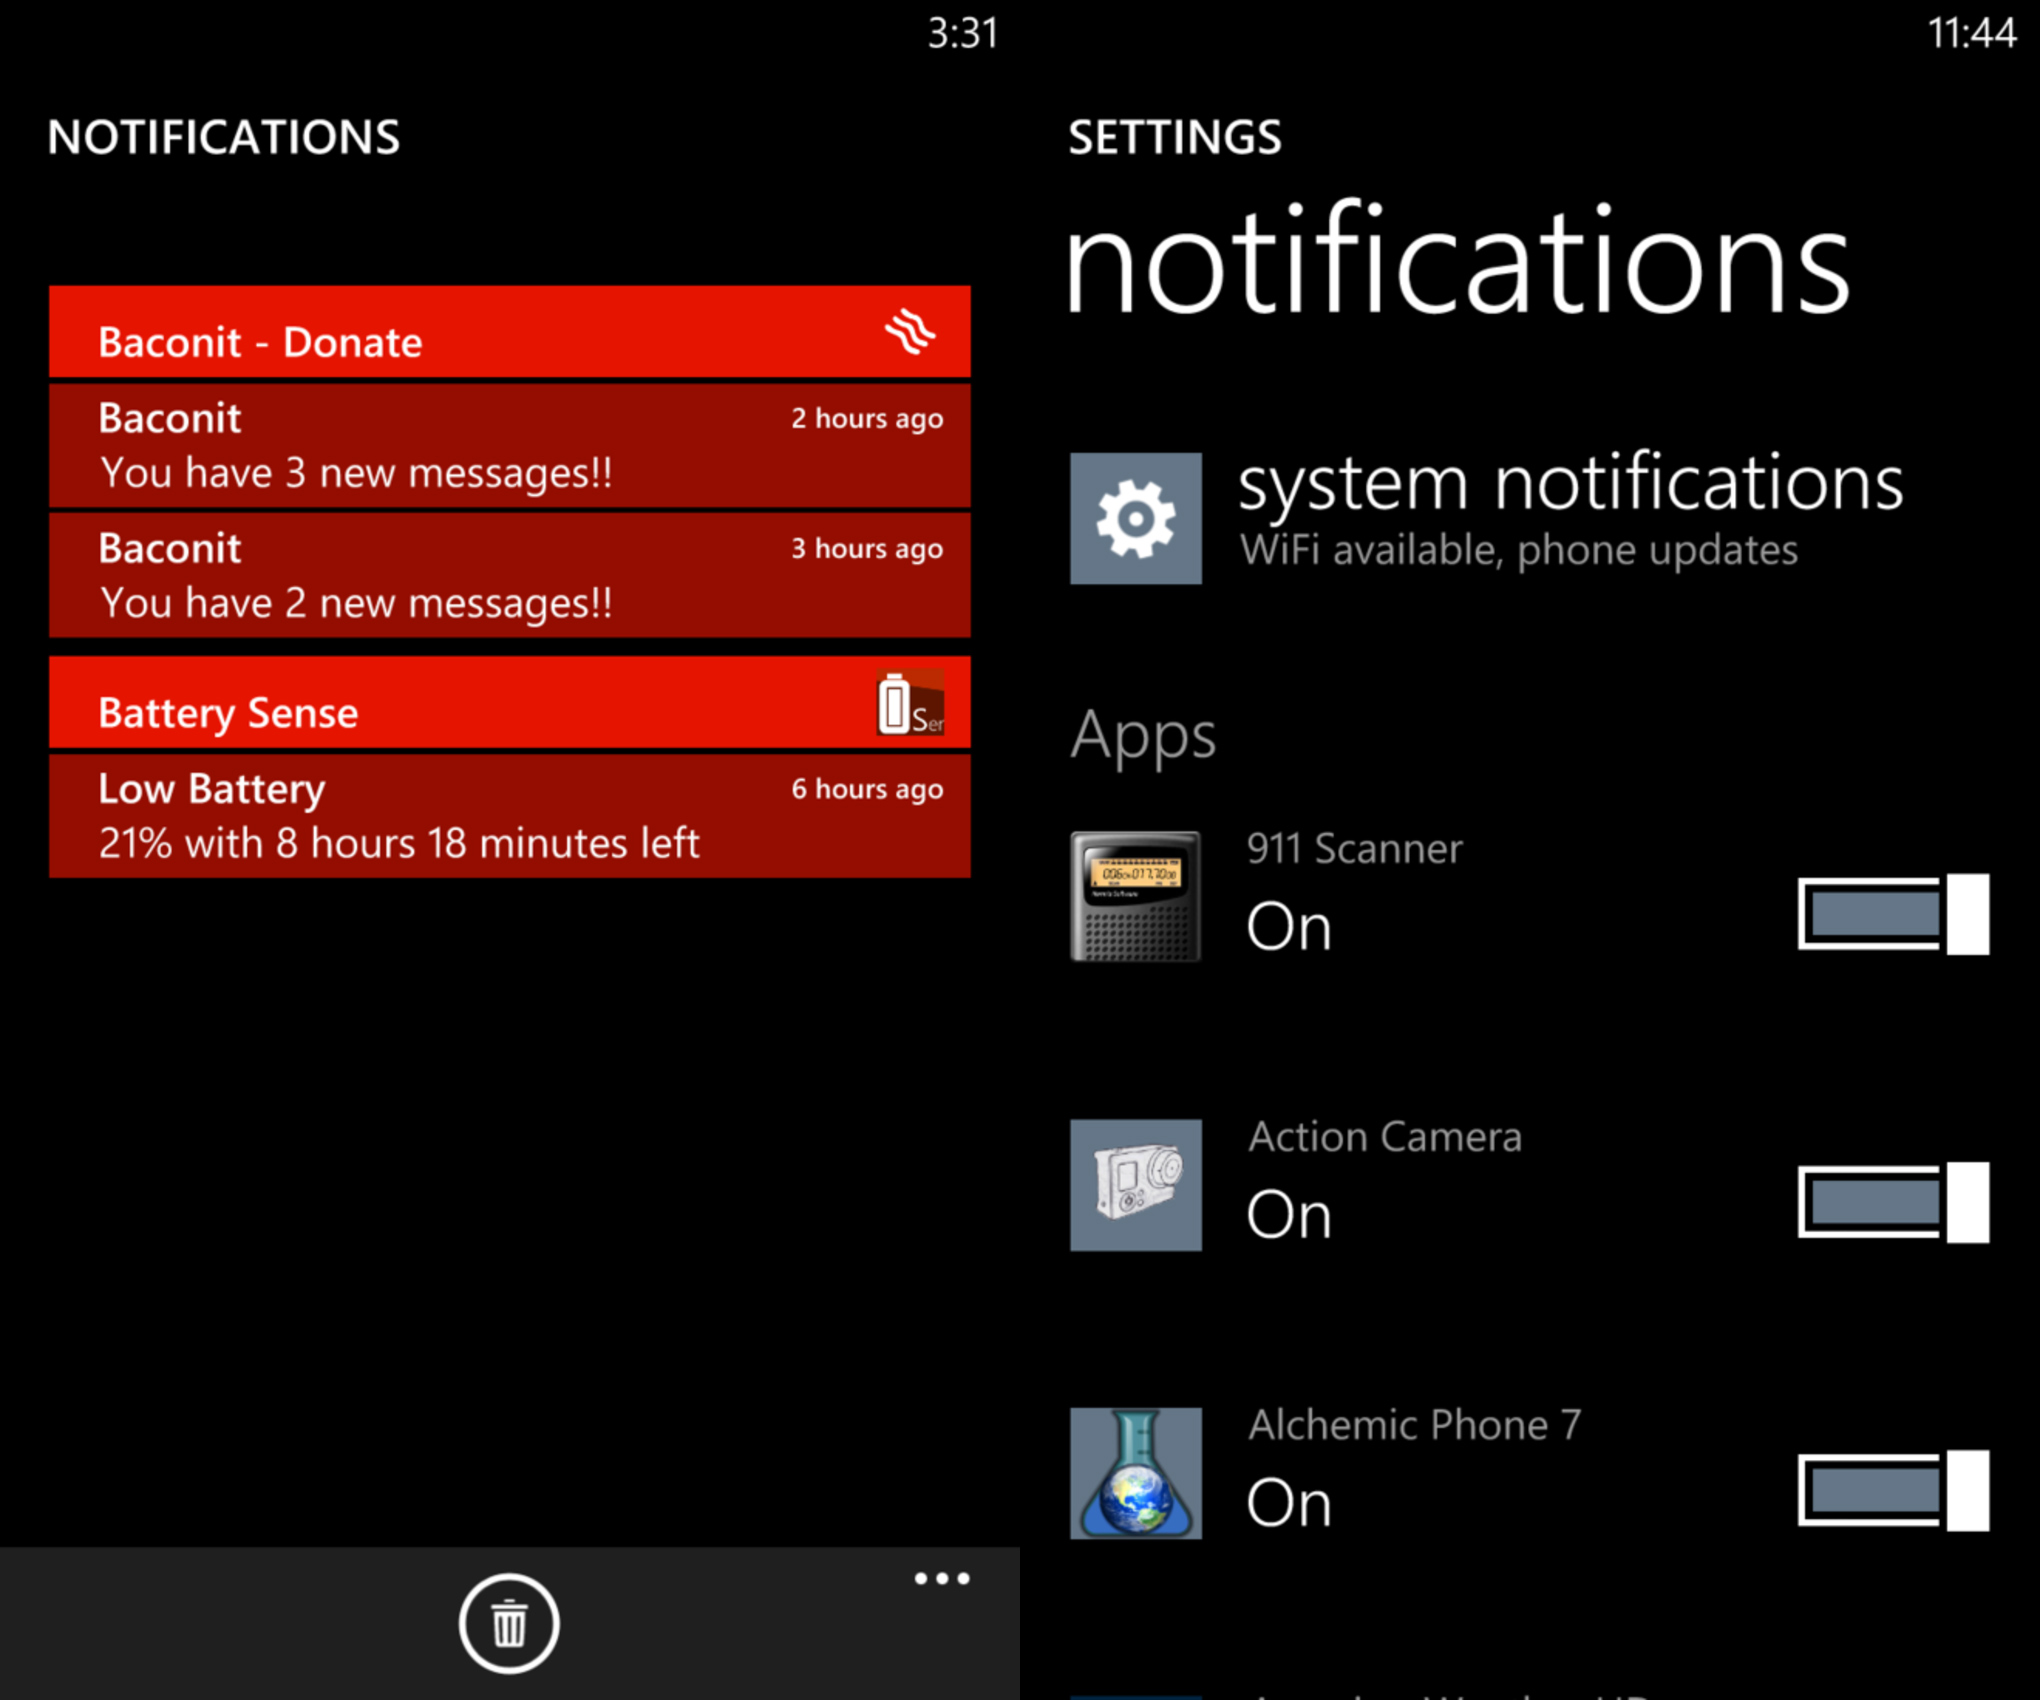 Imagens vazadas mostram central de notificações no Windows Phone